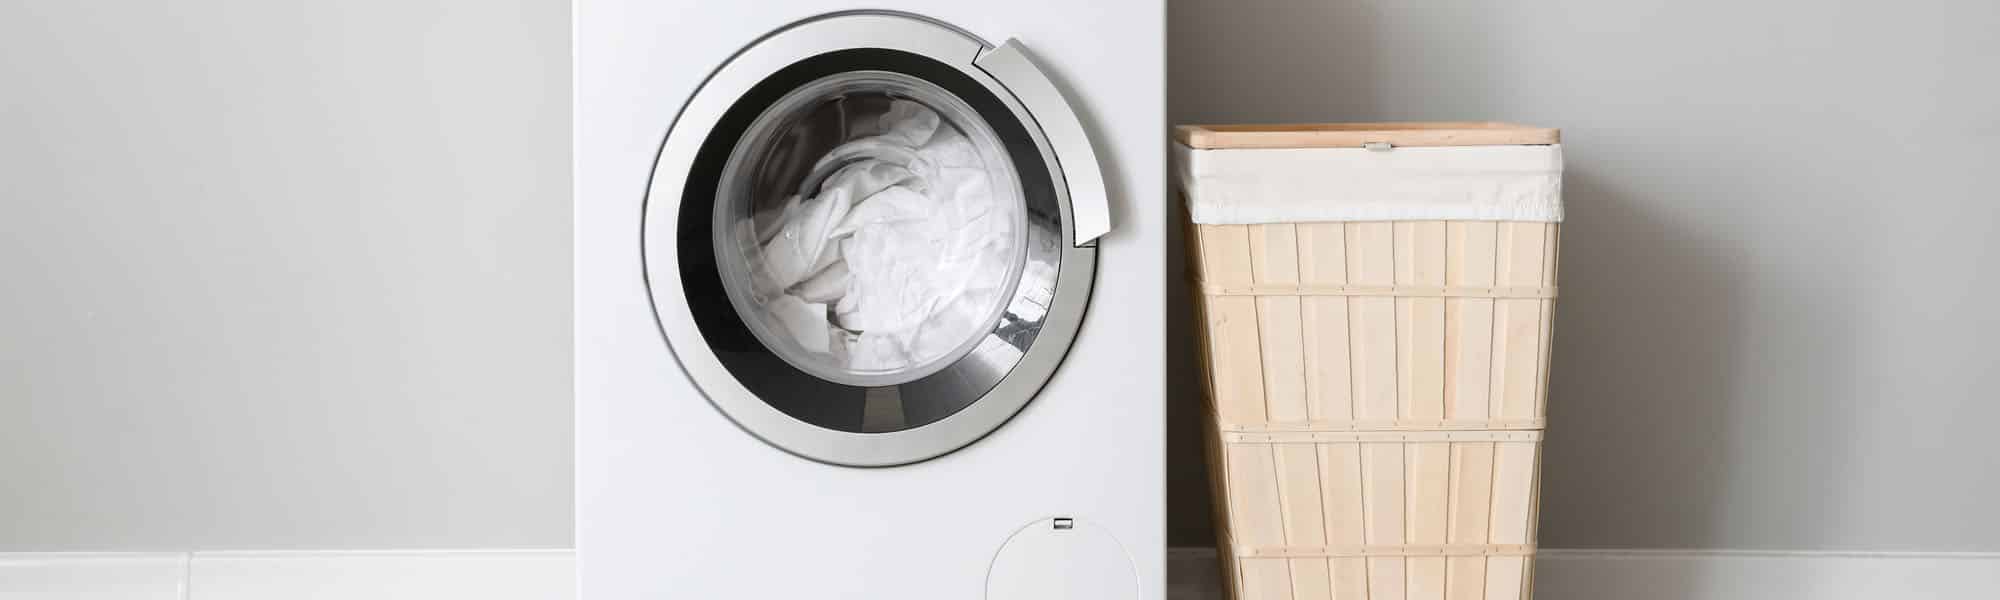 Waschmaschine entkalken Tipps